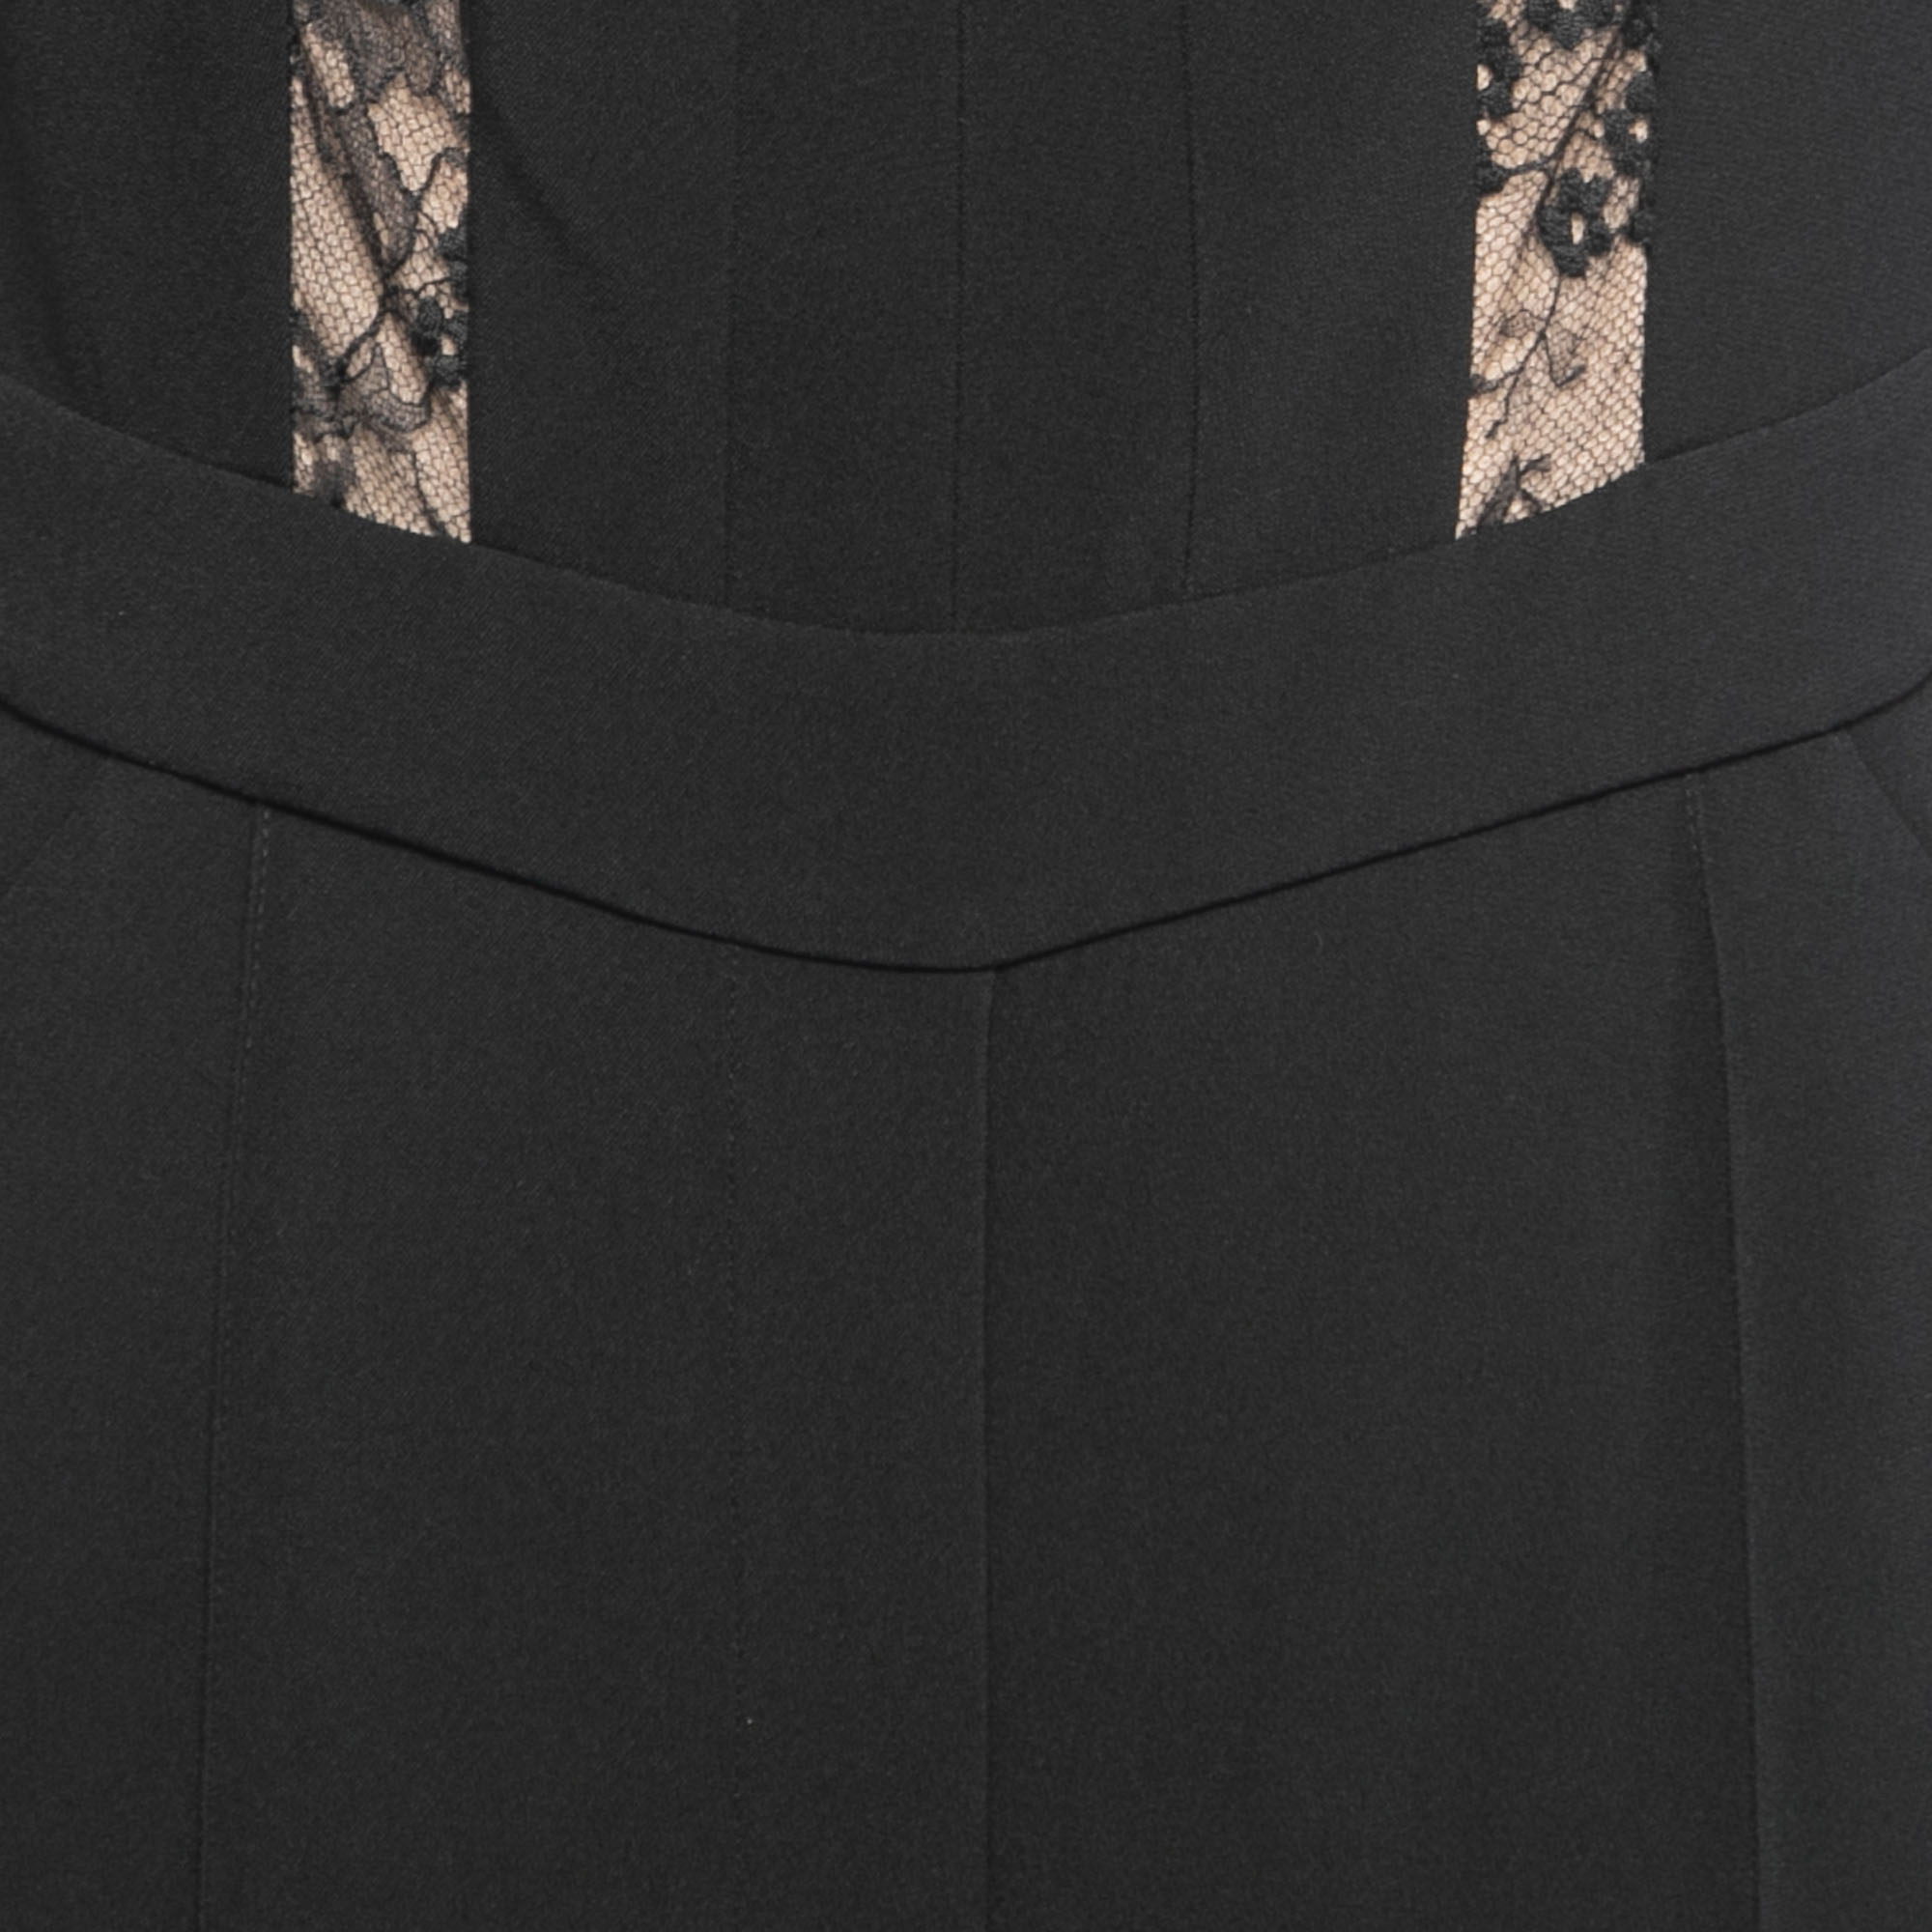 Elie Saab Black Silk & Nylon Lace Trimmed Full Sleeve Jumpsuit S